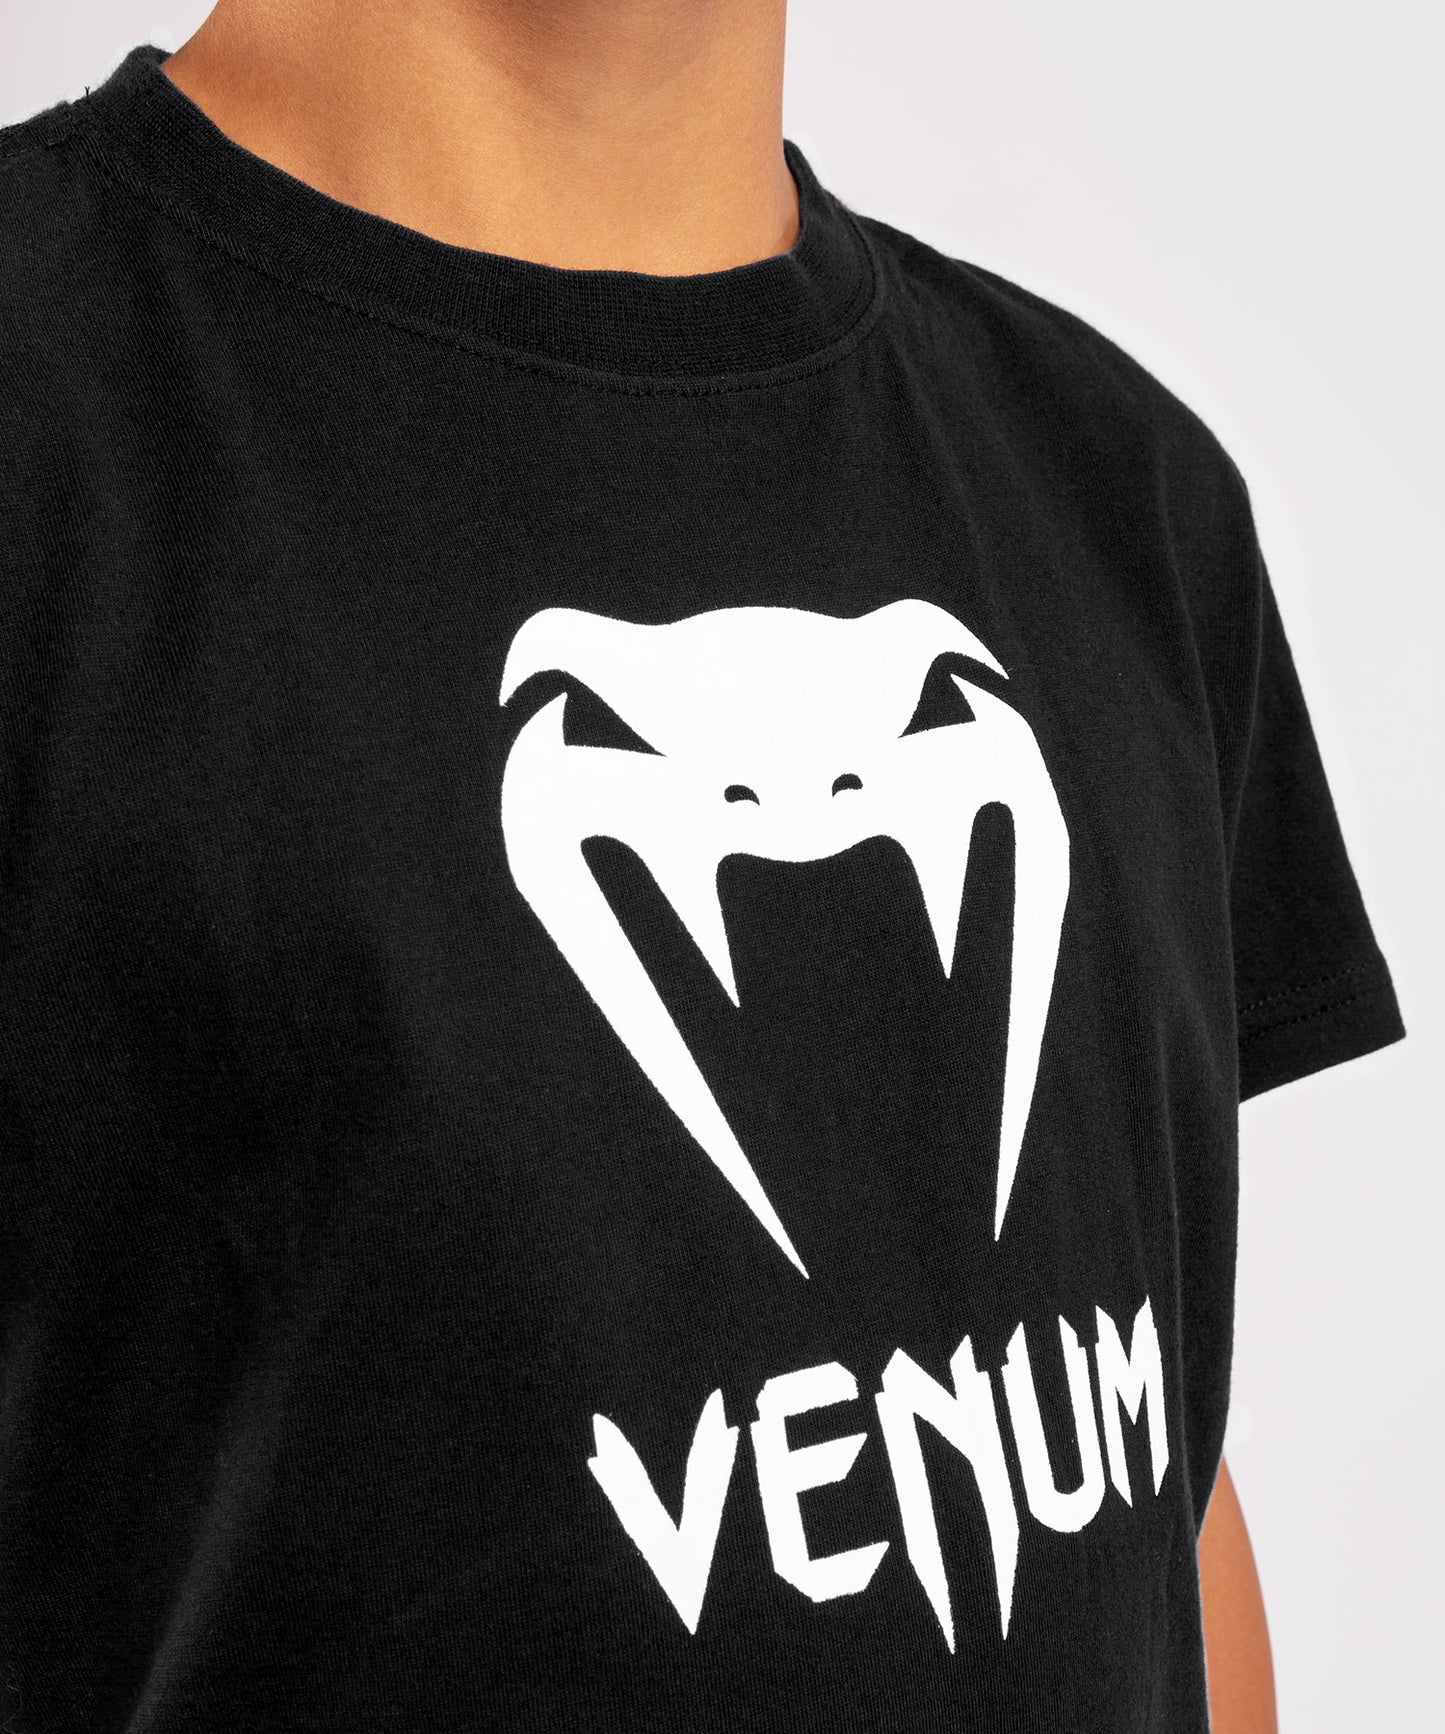 Camiseta Venum Classic - Niños - Negro